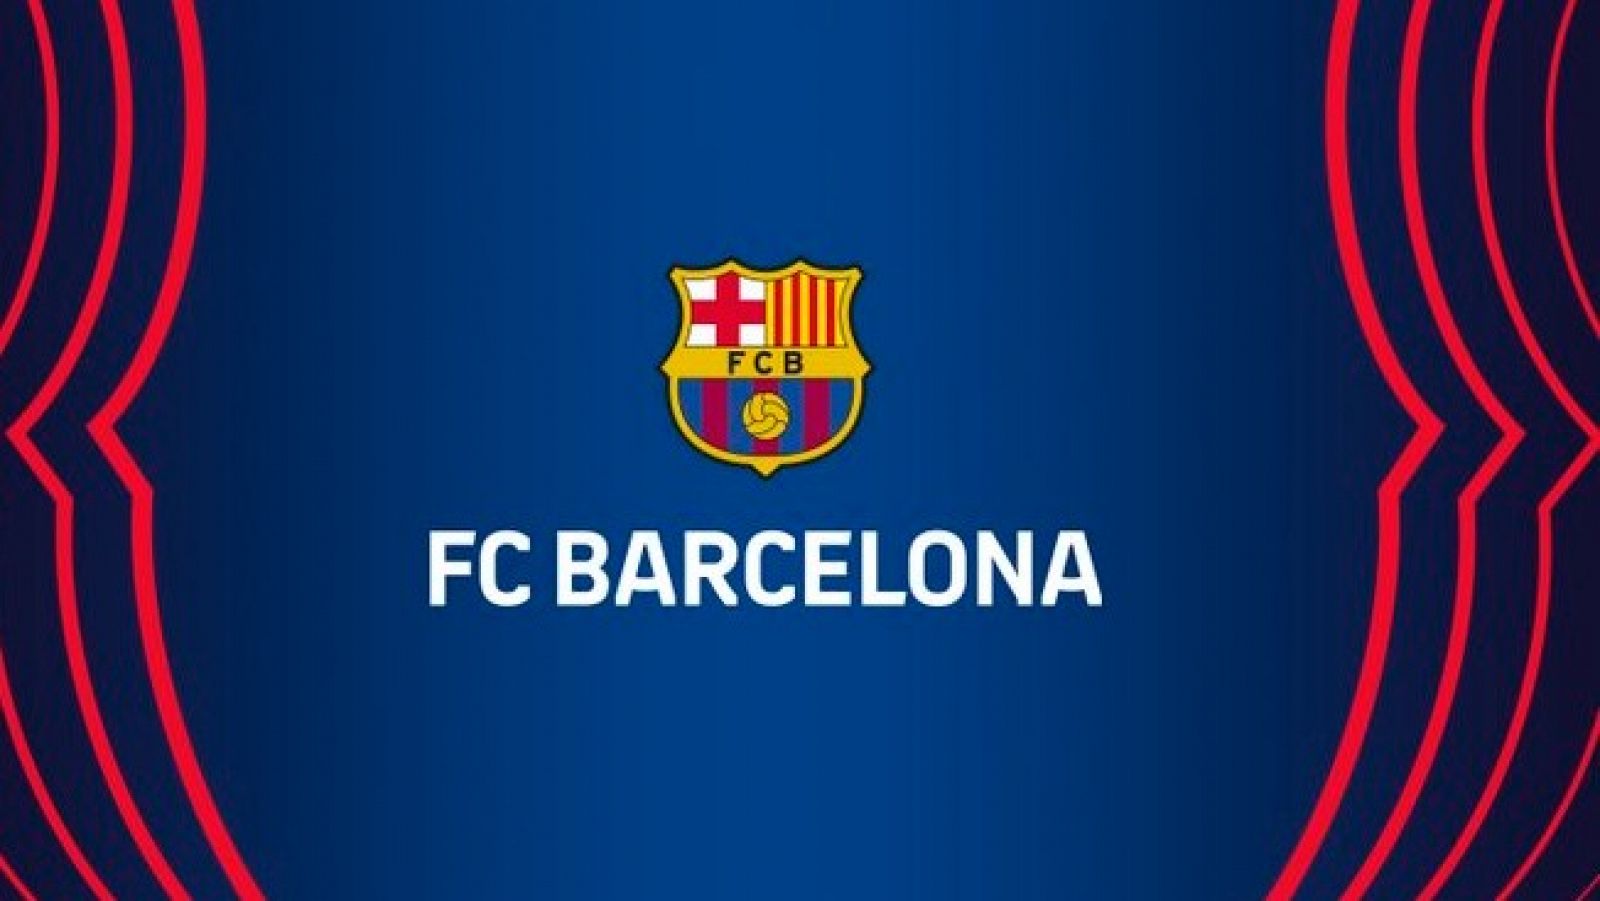 Imagen institucional del FC Barcelona.